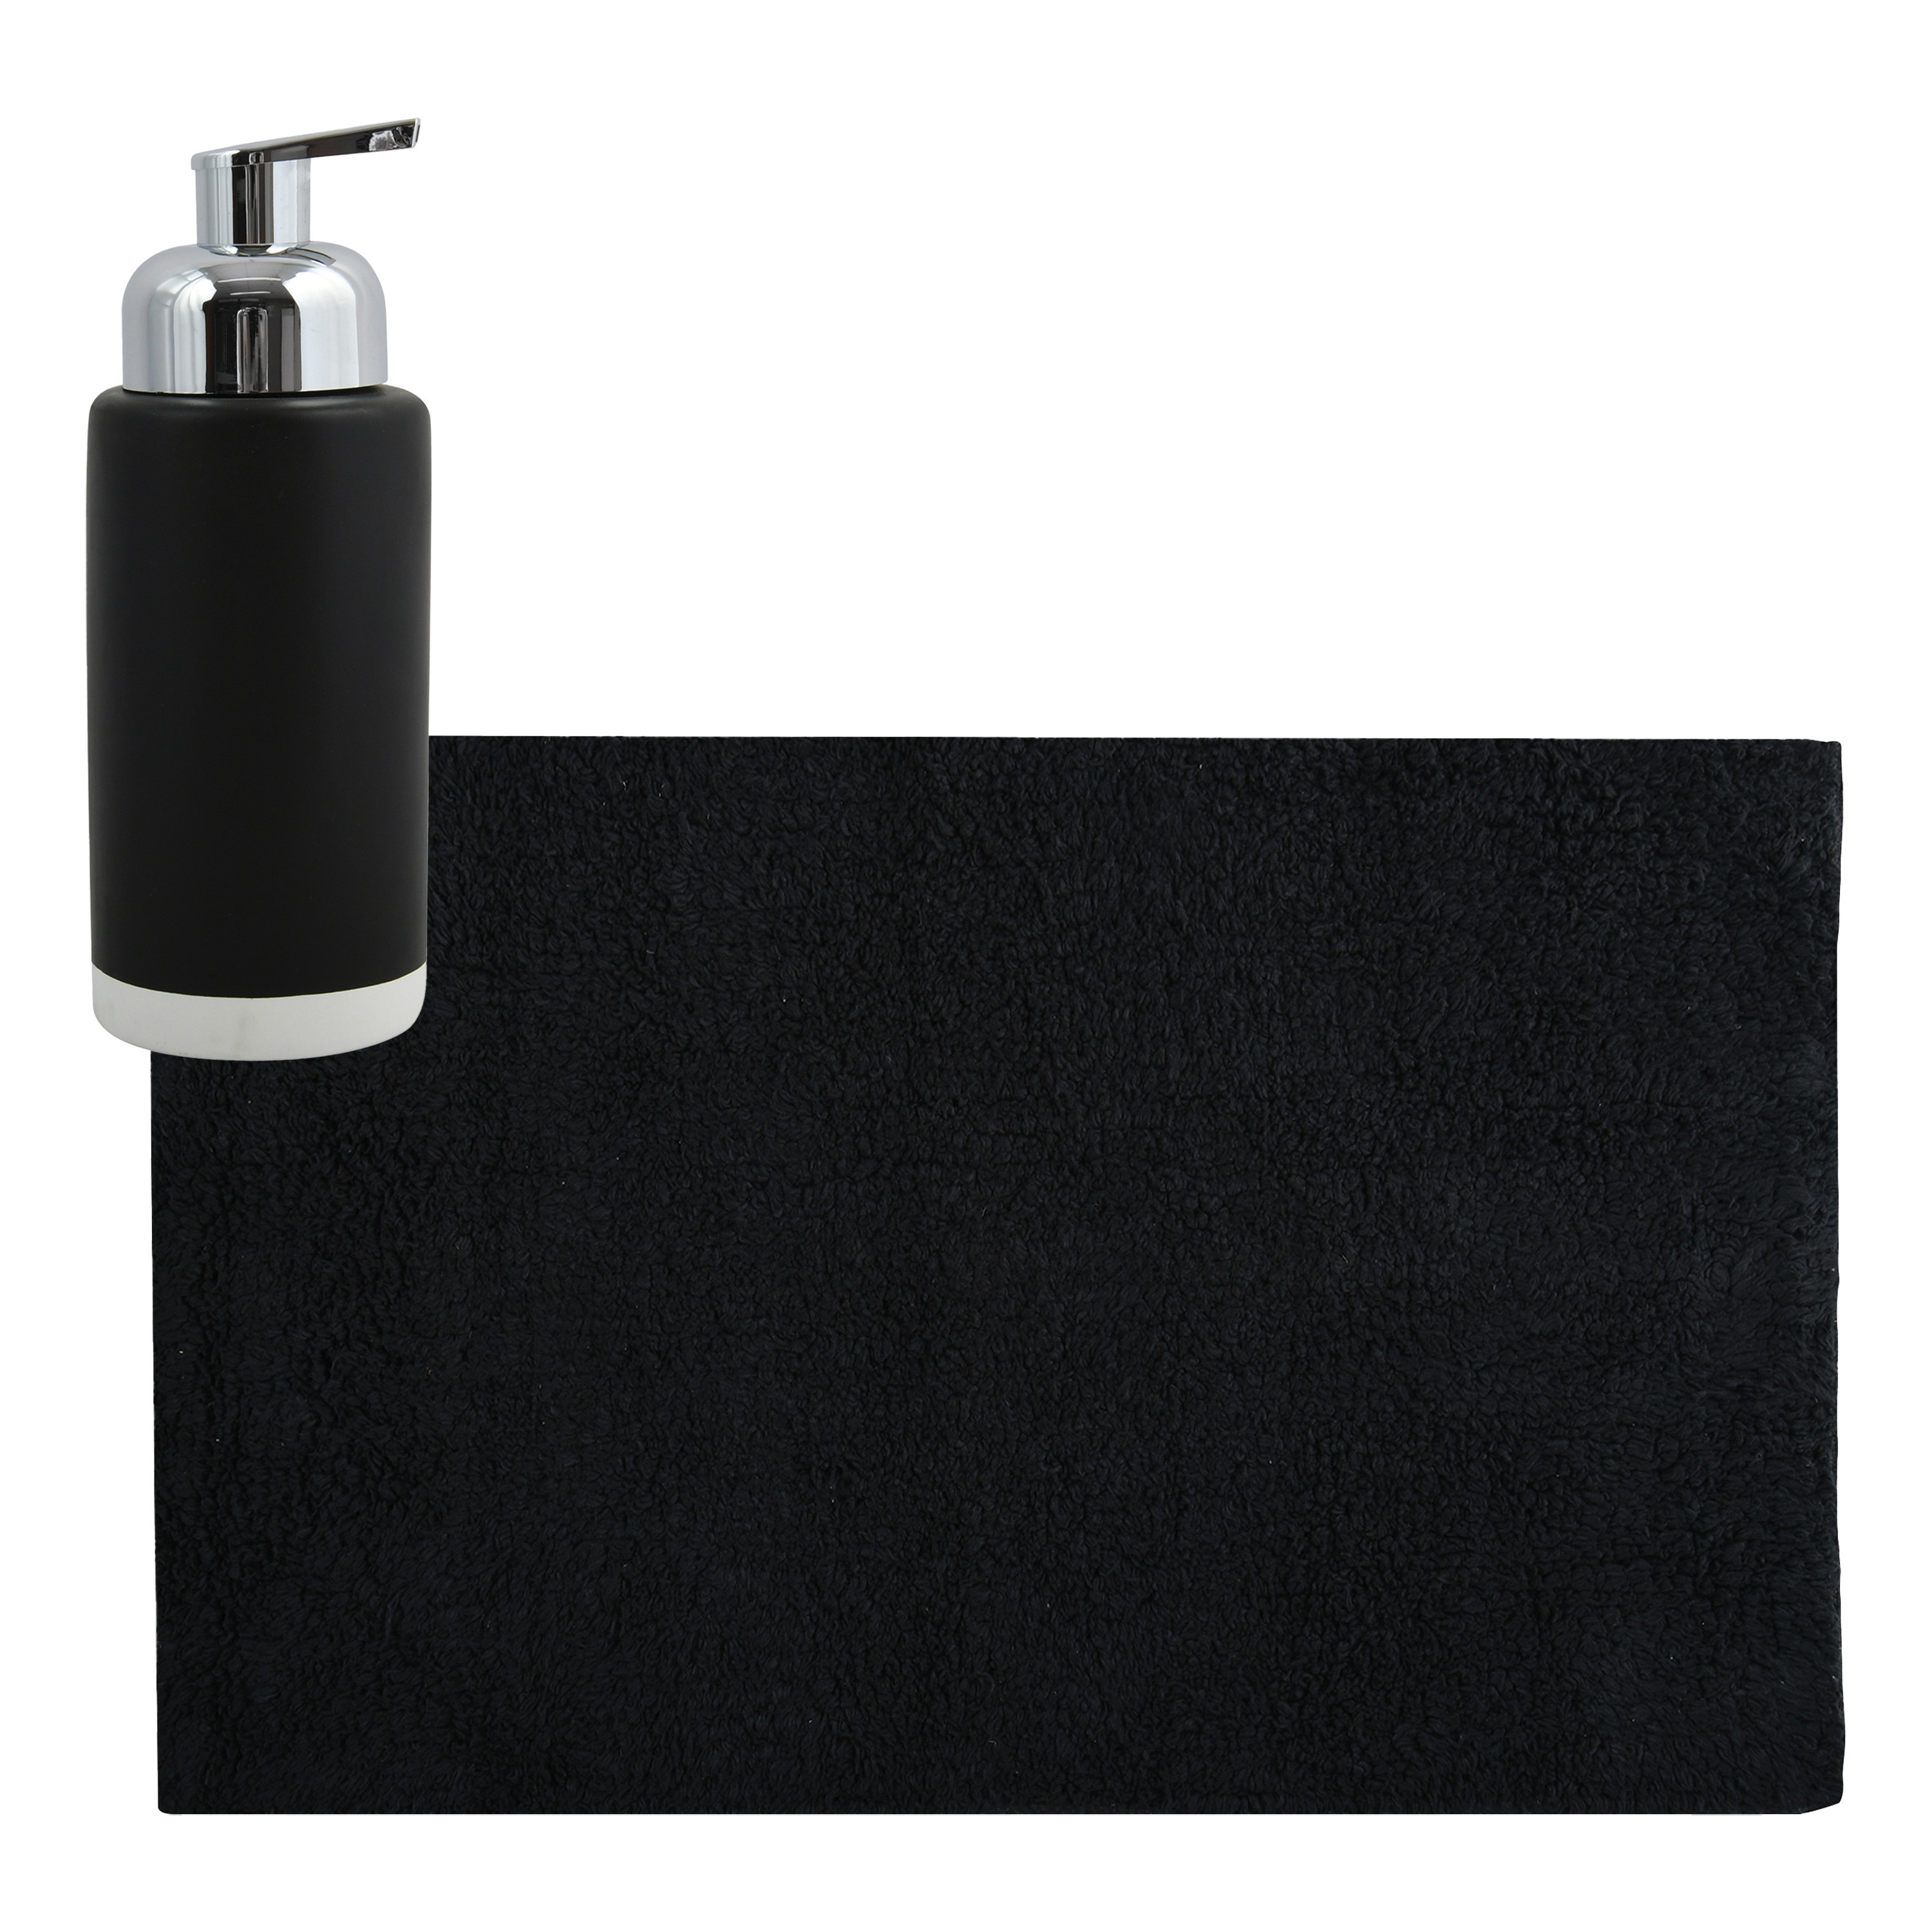 MSV badkamer droogloop mat-tapijt 40 x 60 cm met zelfde kleur zeeppompje 275 ml zwart